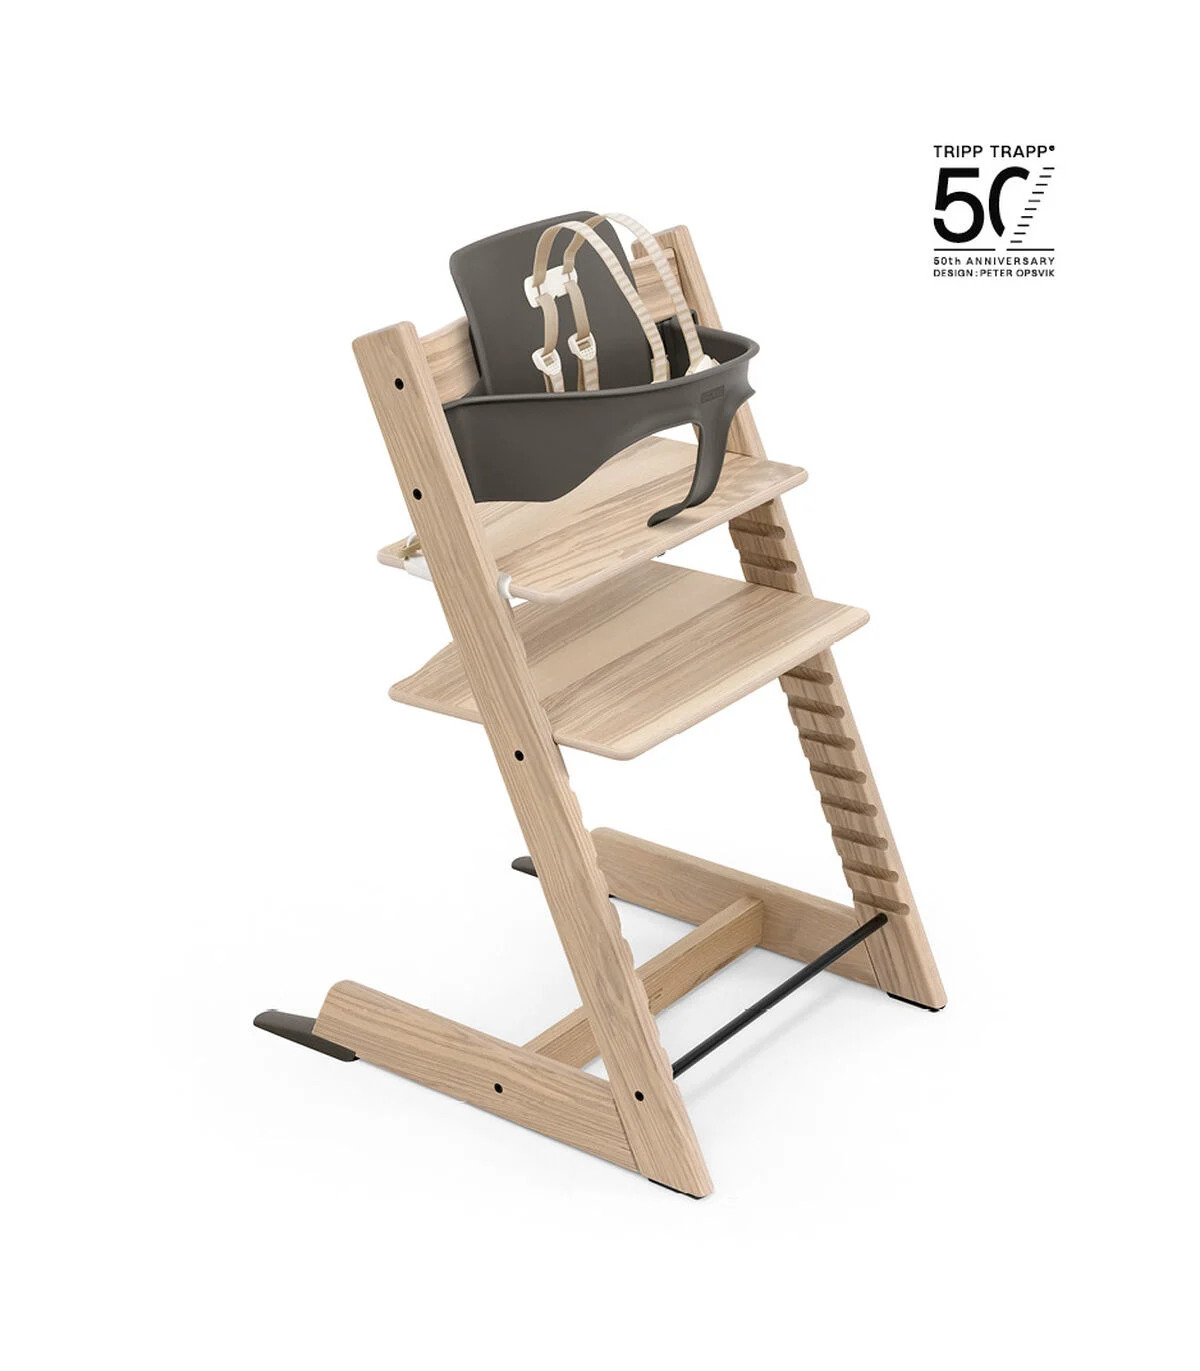 50th Anniversary Tripp Trapp High Chair in Ash Wood